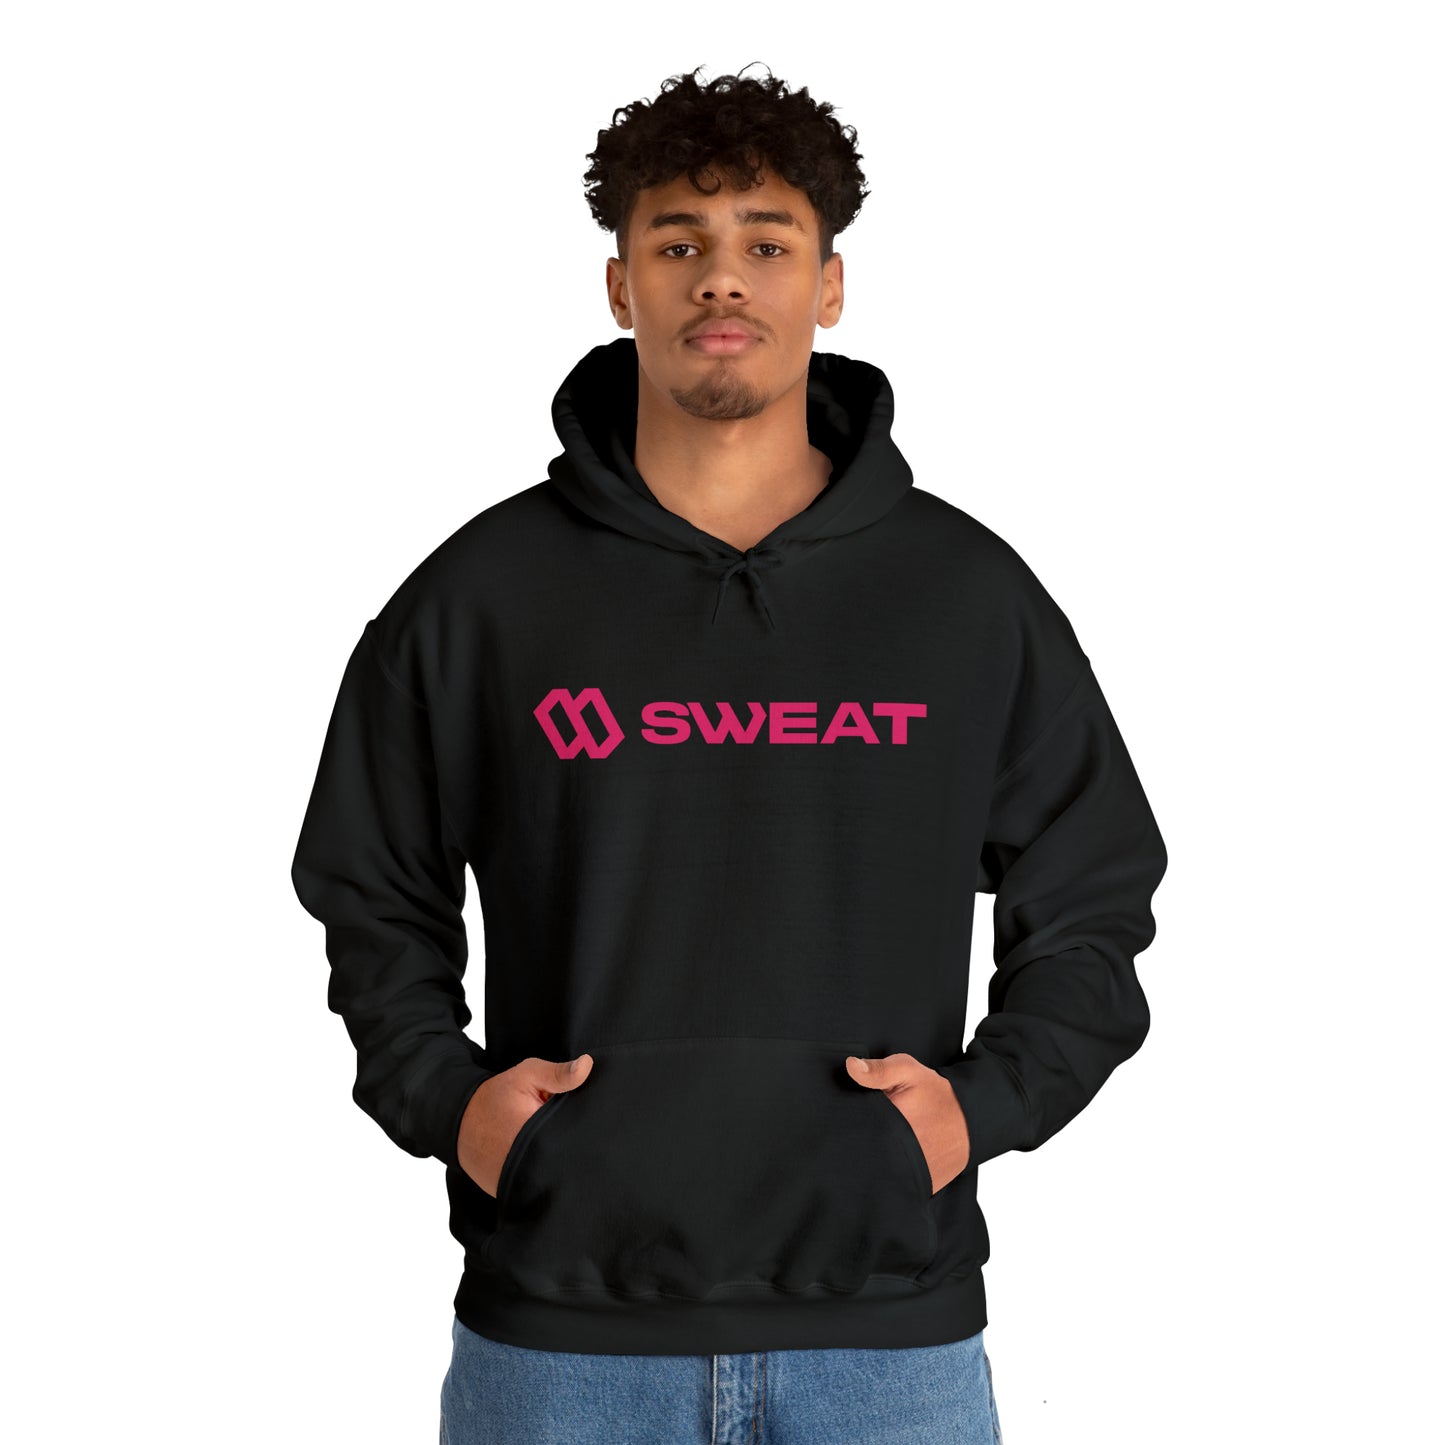 Sweat Unisex Hooded Sweatshirt